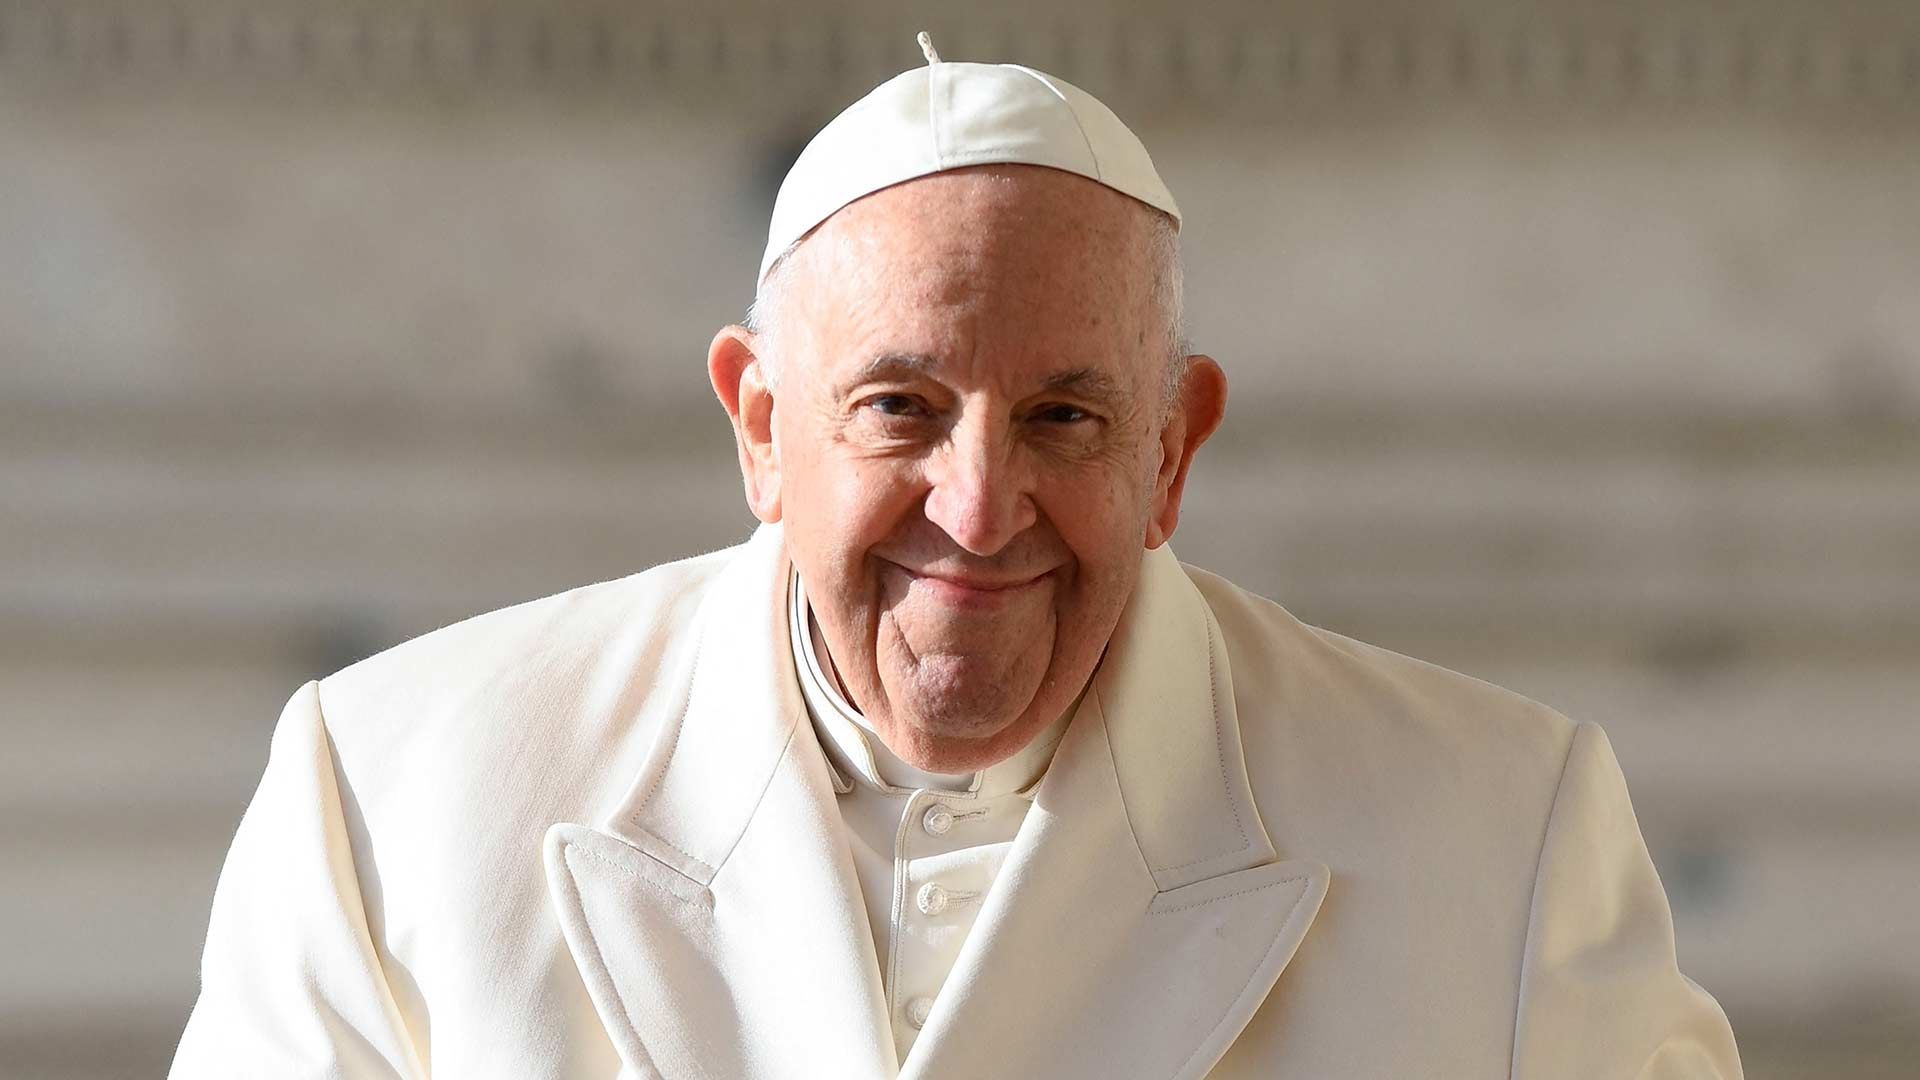 El Papa Francisco ingresó al hospital por dificultades respiratorias y fue trasladado en ambulancia, informaron medios italianos